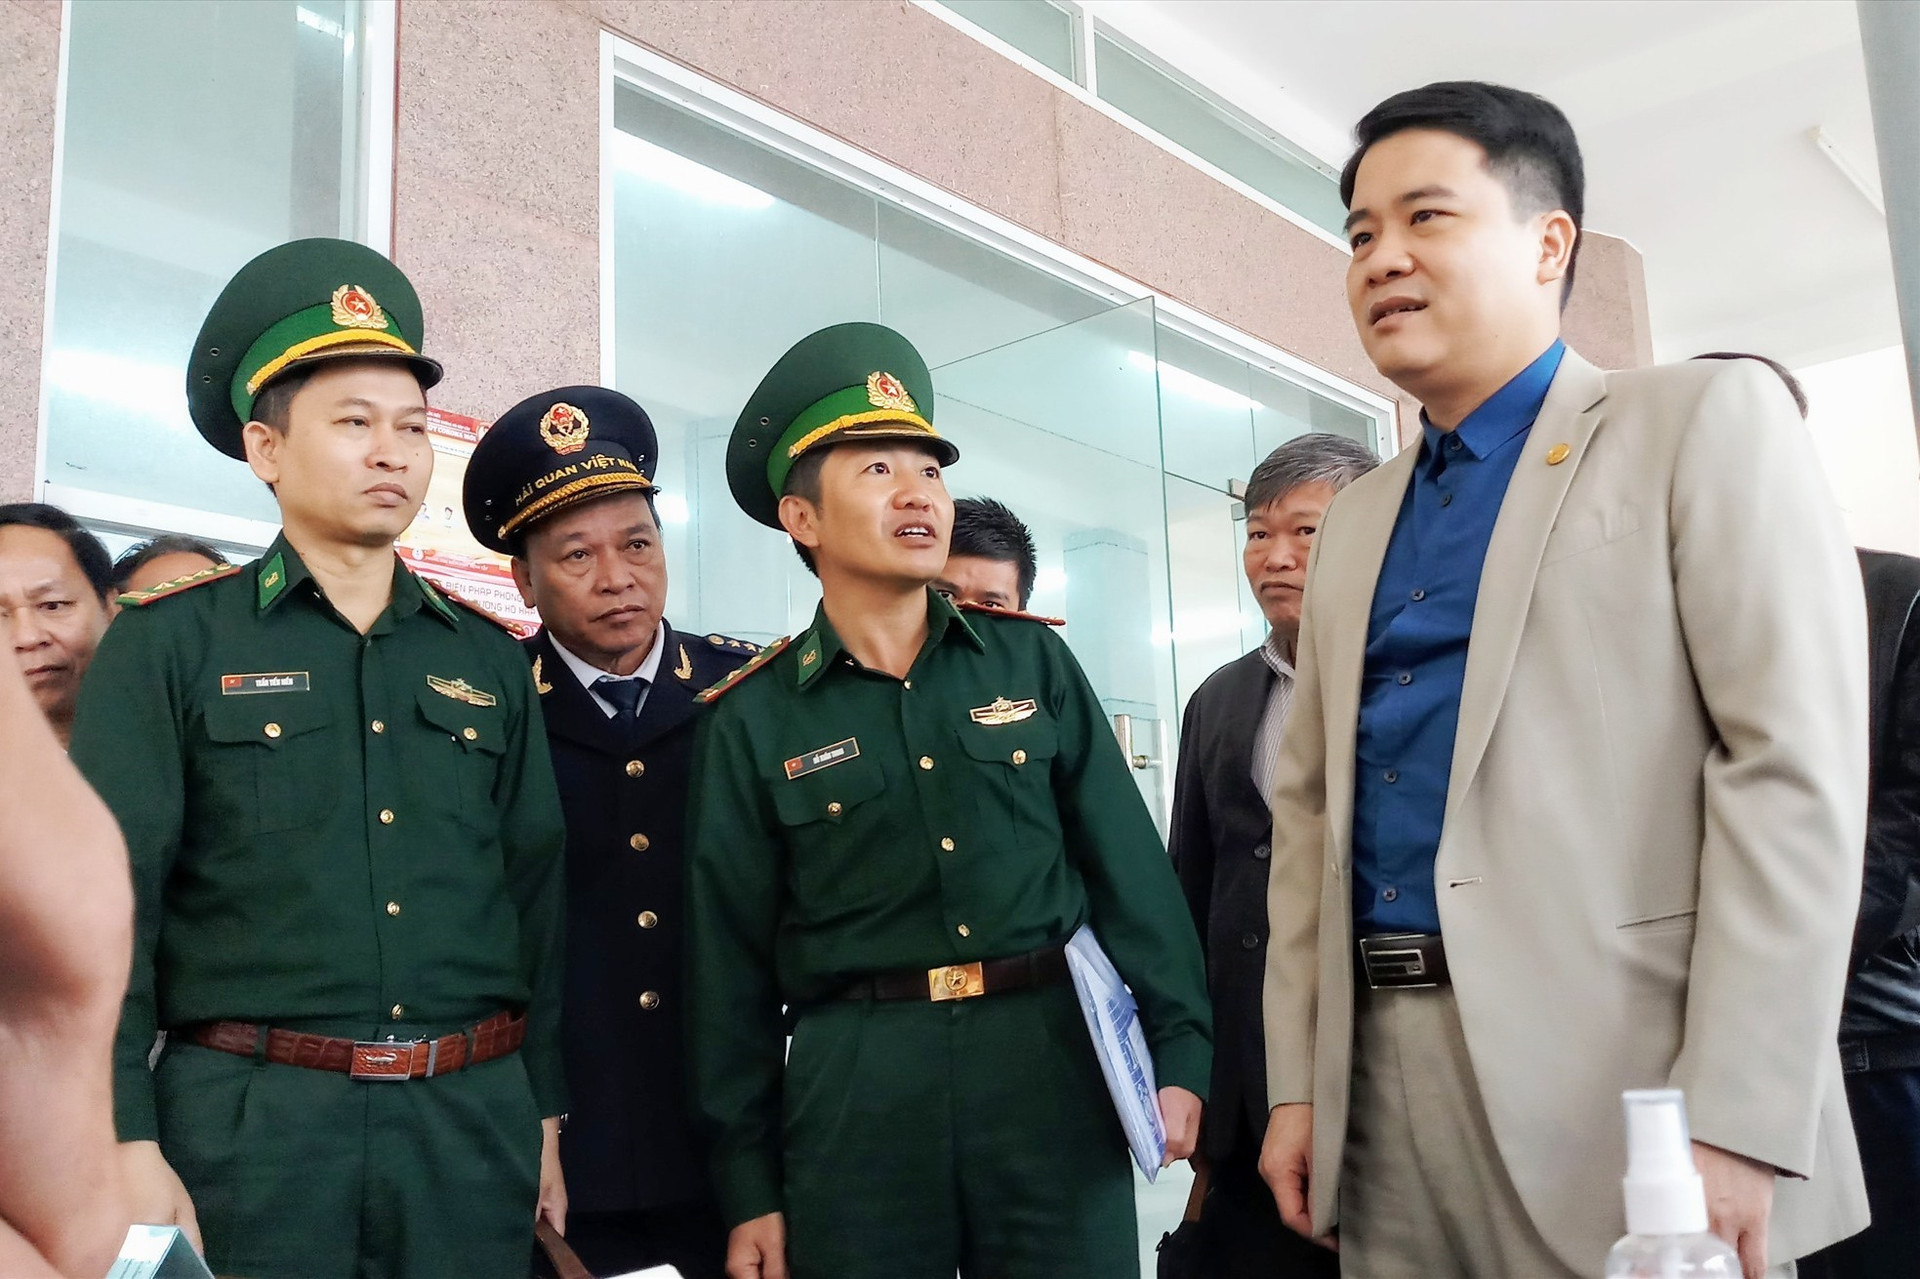 Phó Chủ tịch UBND tỉnh Trần Văn Tân kiểm tra công tác phòng chống dịch Covid-19 tại cửa khẩu Nam Giang - Đắc Tà Oọc. Ảnh: A.N